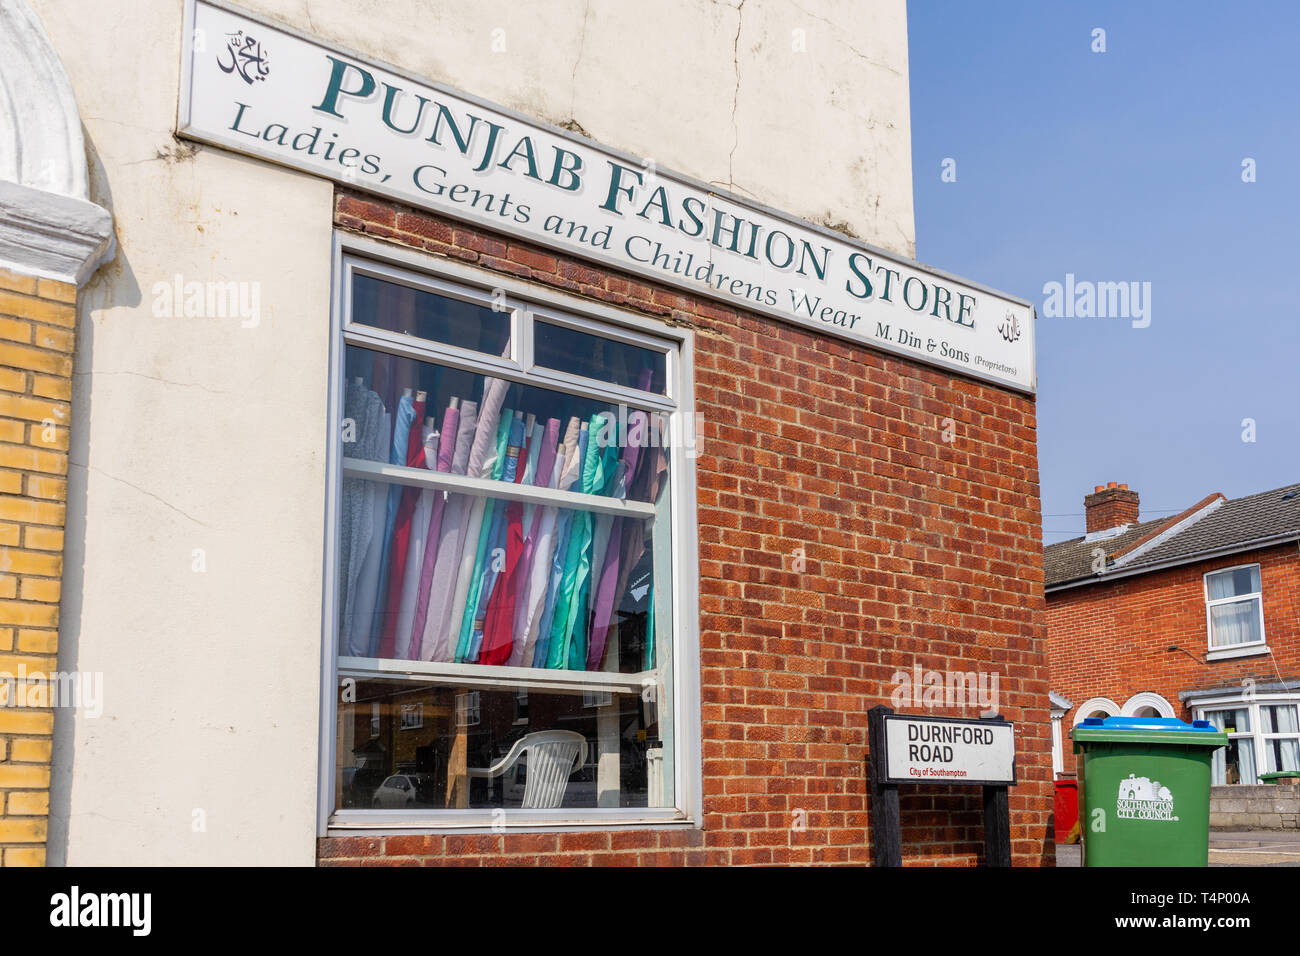 Punjab Fashion Store vitrine le long Nicholstown Durnford Road à Southampton, Southampton, Hampshire district, England, UK Banque D'Images